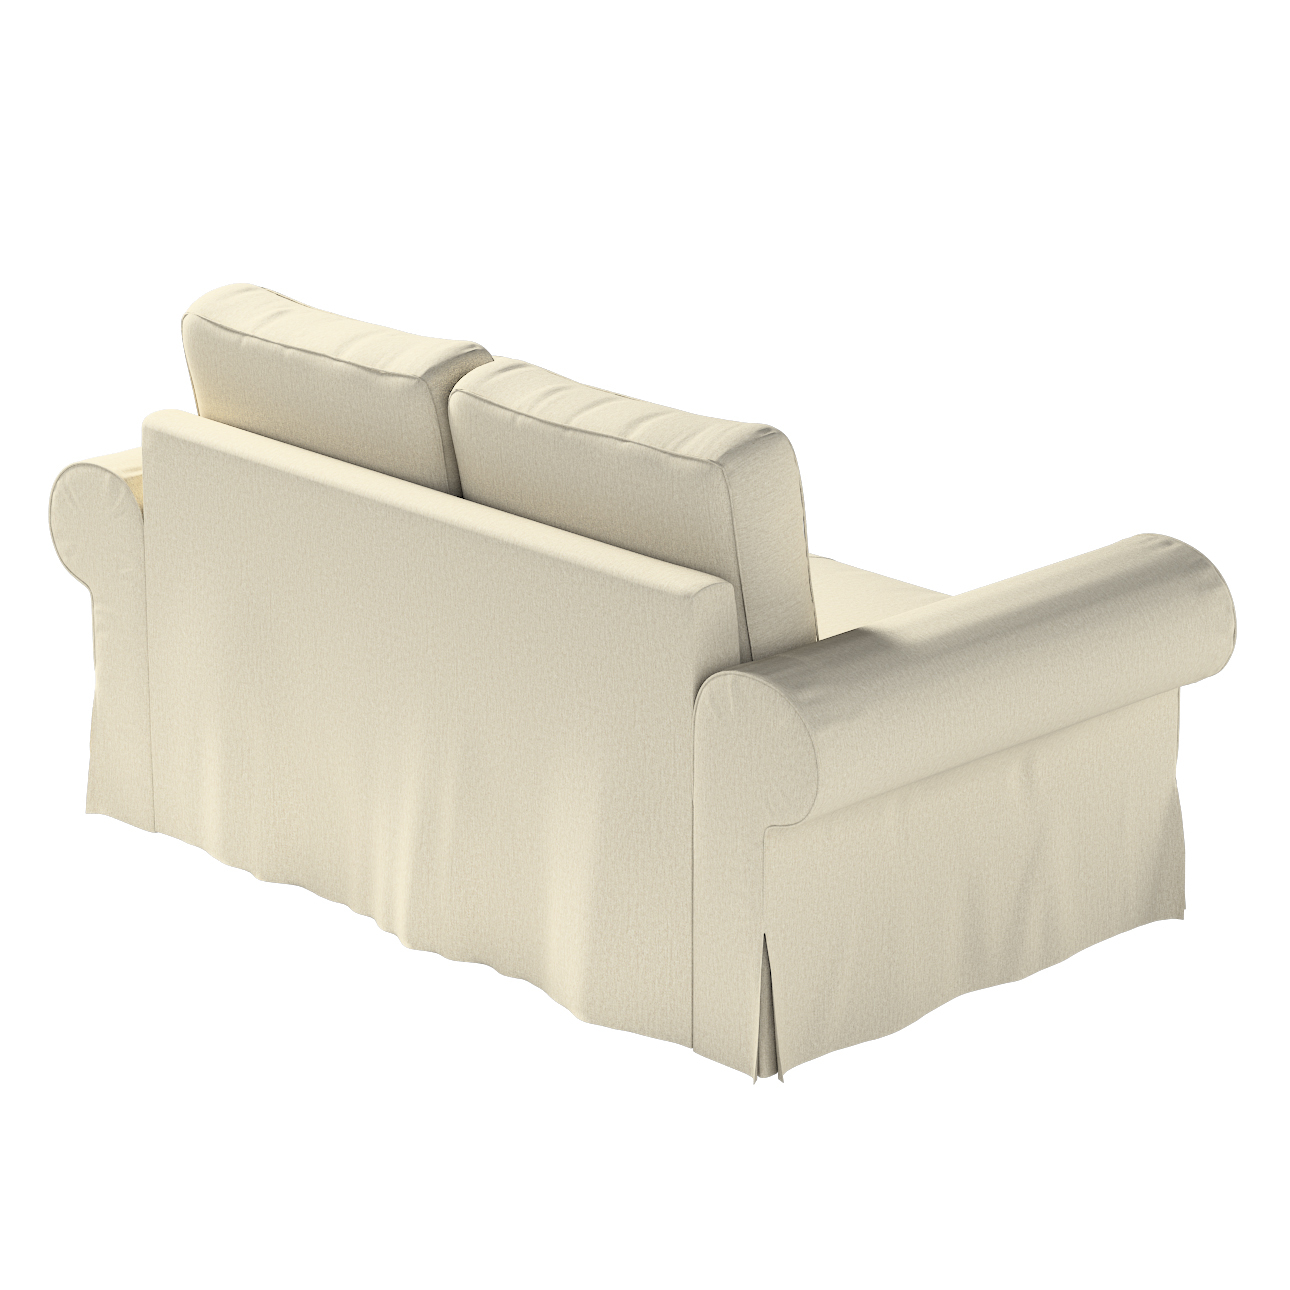 Bezug für Backabro 2-Sitzer Sofa ausklappbar, beige-grau, Bezug für Backabr günstig online kaufen